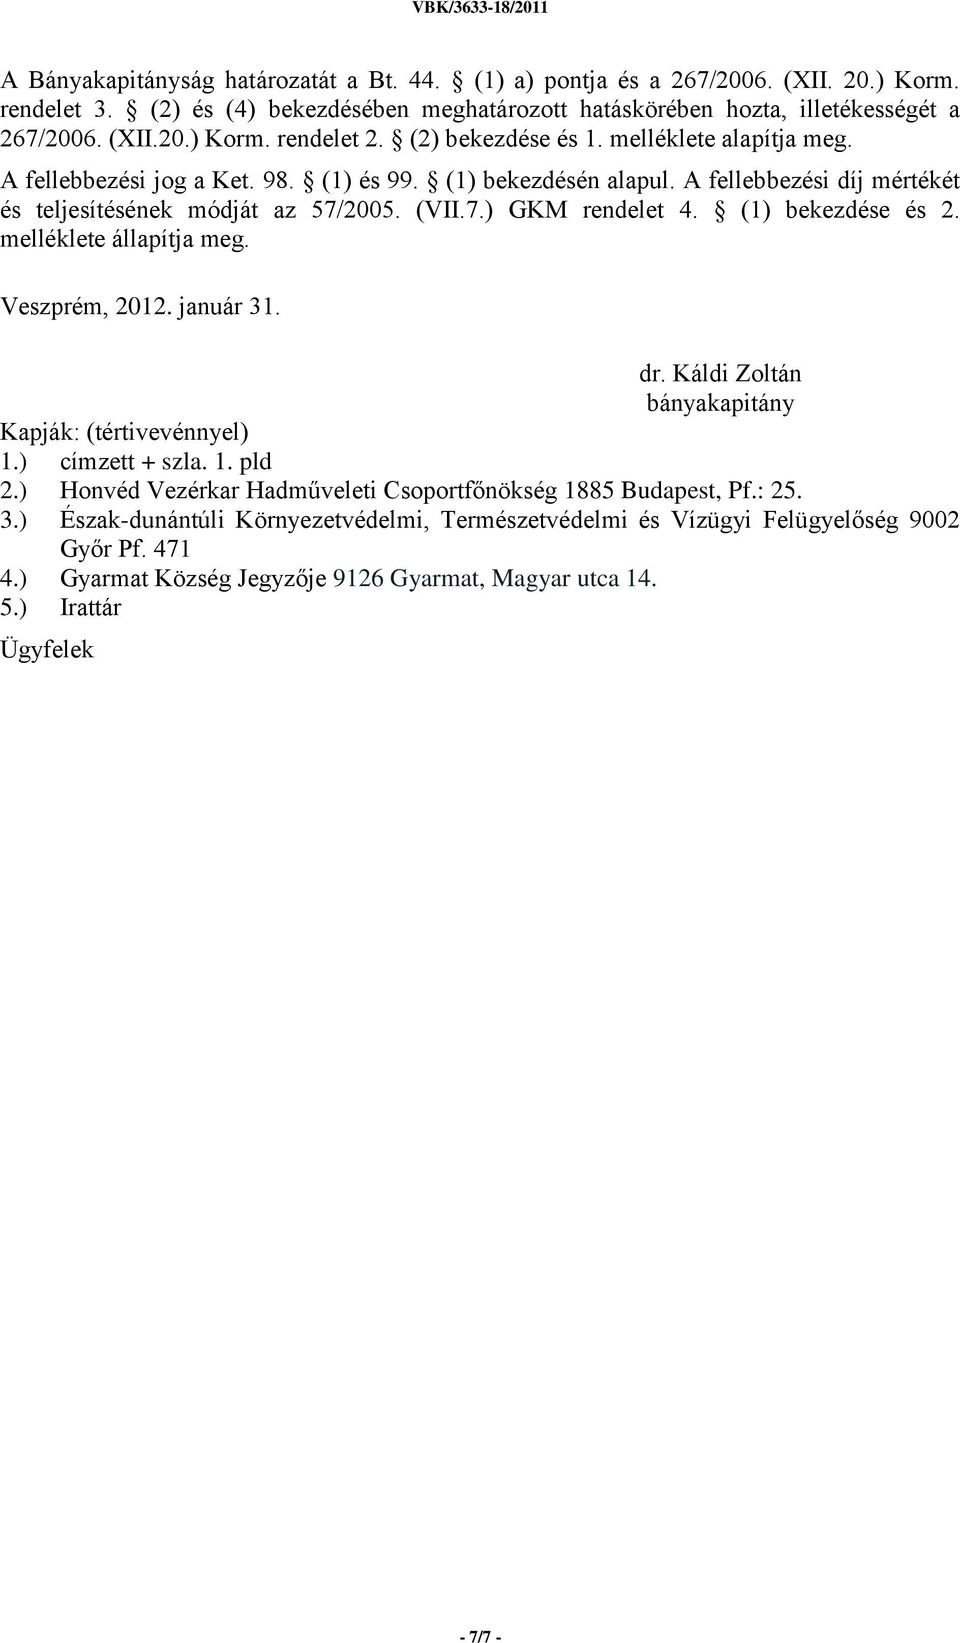 (1) bekezdése és 2. melléklete állapítja meg. Veszprém, 2012. január 31. dr. Káldi Zoltán bányakapitány Kapják: (tértivevénnyel) 1.) címzett + szla. 1. pld 2.